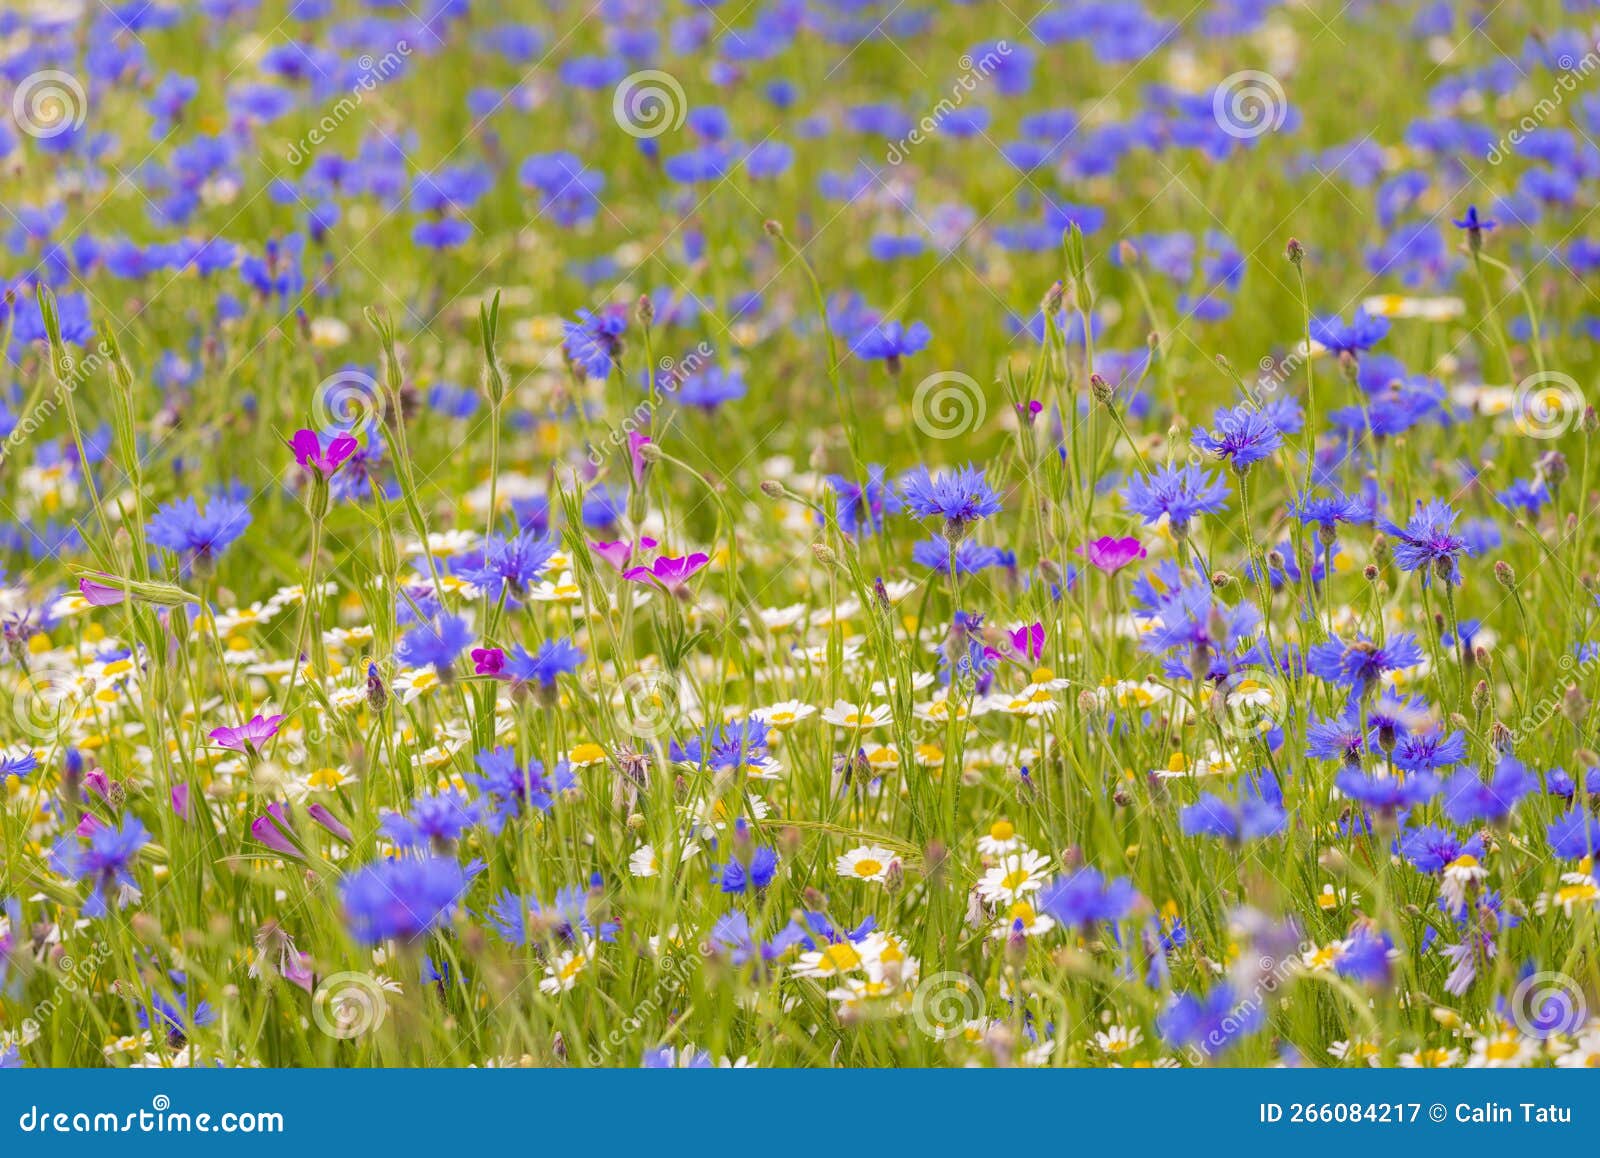 поле с дикими голубыми цветами ромашки и дикими ромашками весной в отдаленных сельских районах. поле с дикими голубыми цветами ромашки и дикими ромашками весной в отдаленной сельской местности в восточной европе